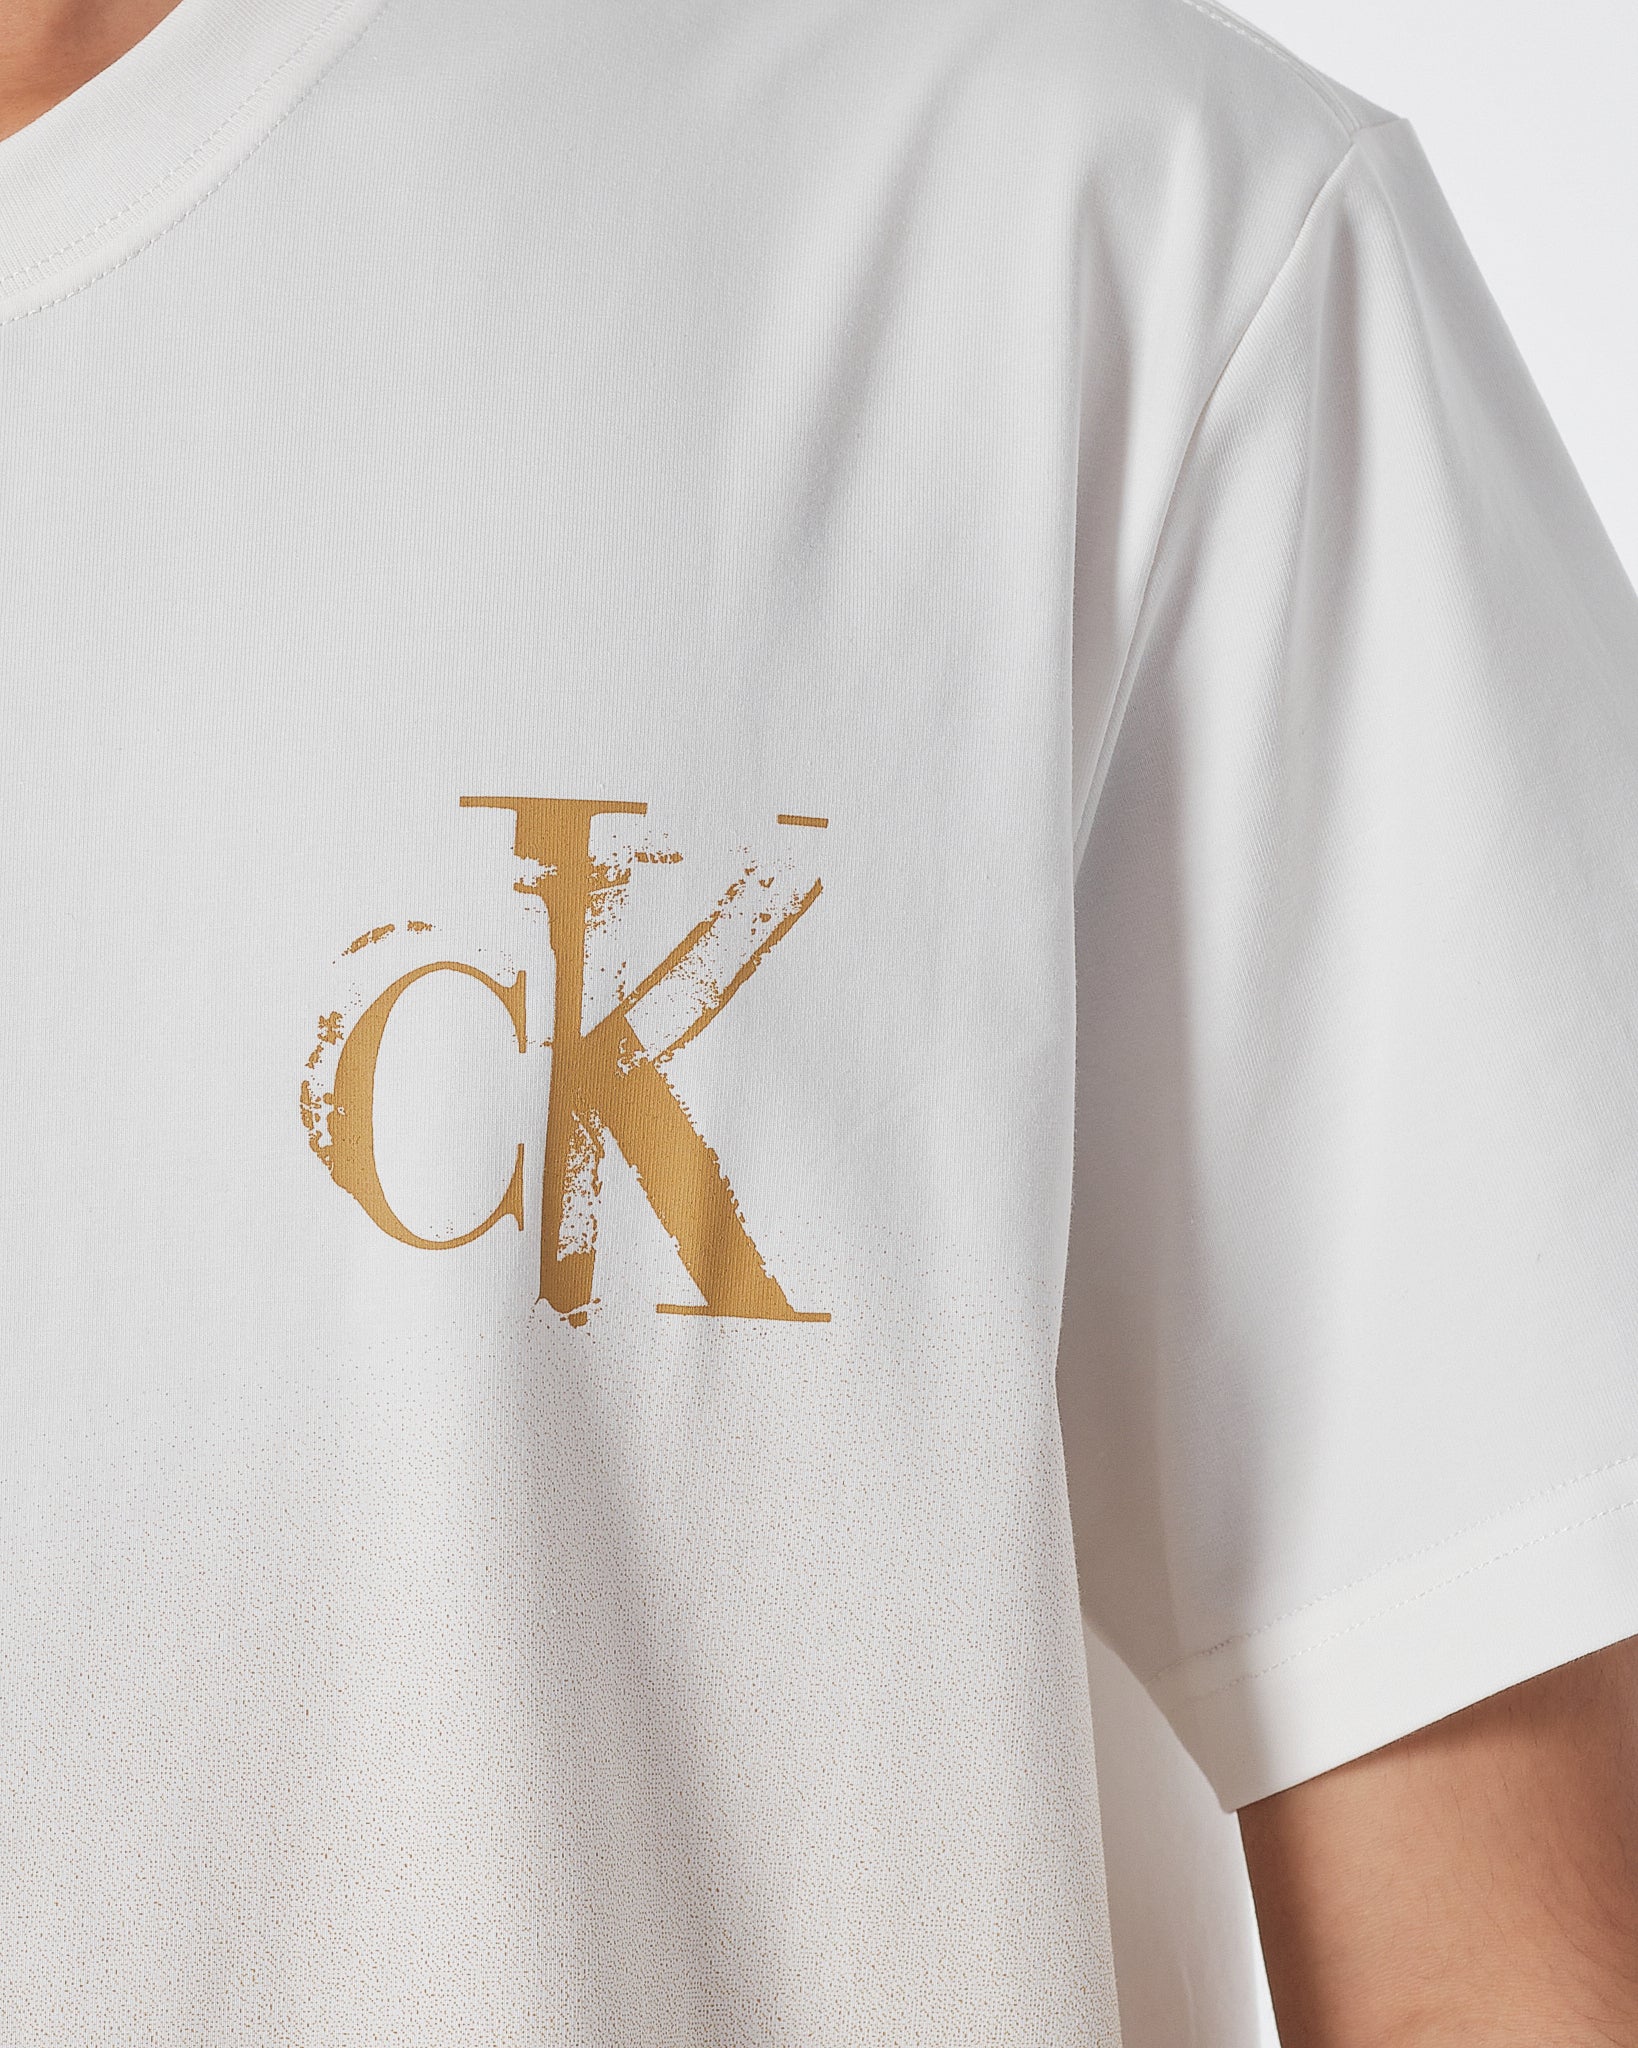 CK Gradient Color Men White T-Shirt 14.90